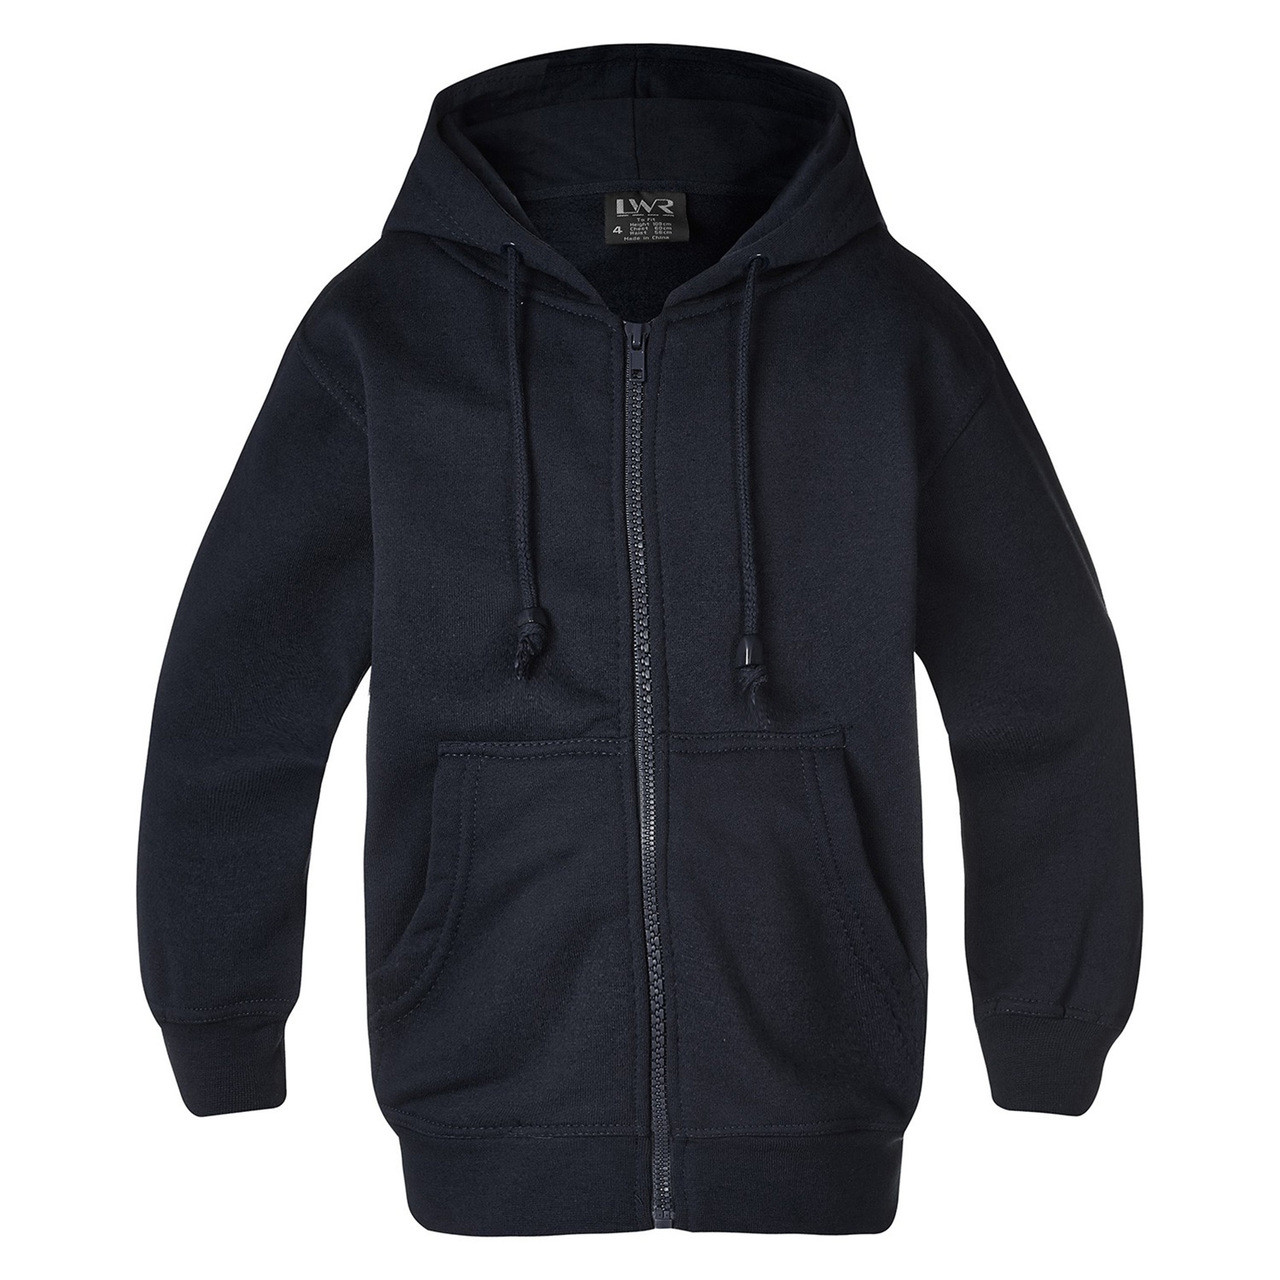 zipper heavy duty adults kids | fleecy plain hoodie | Plus Size Hoodies